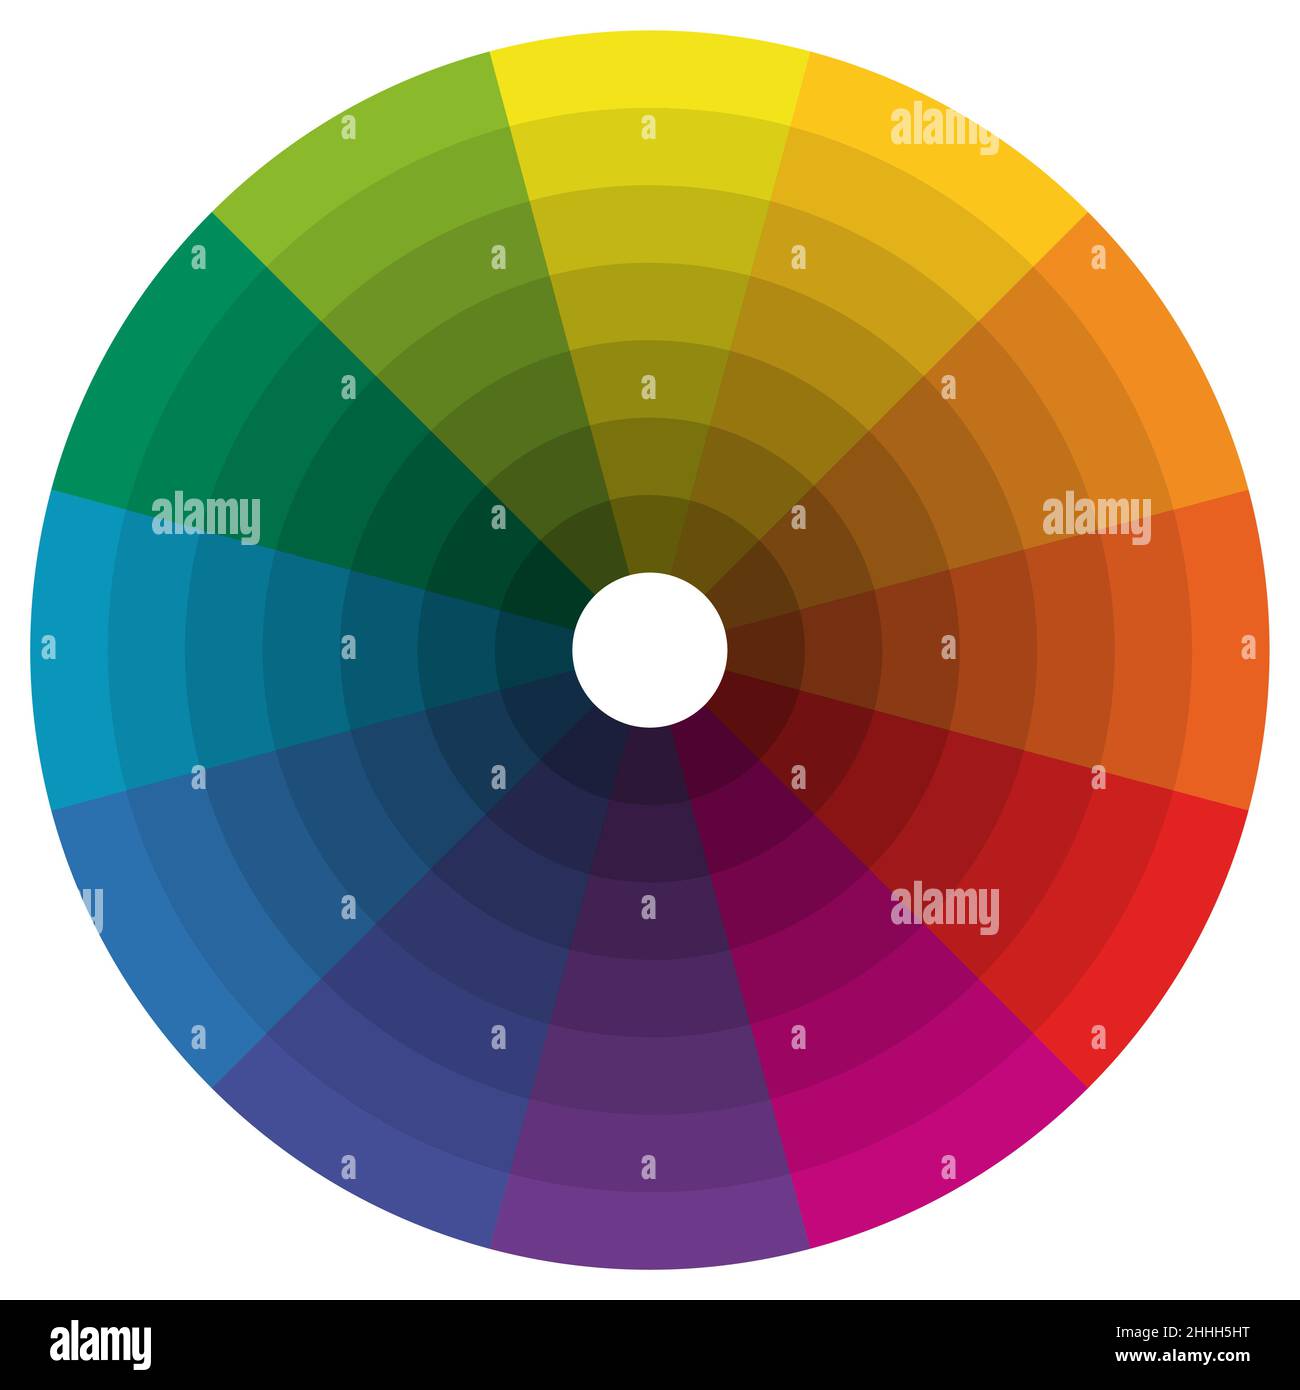 Ilustración de la rueda de colores de impresión con colores diferentes en gradaciones Ilustración del Vector